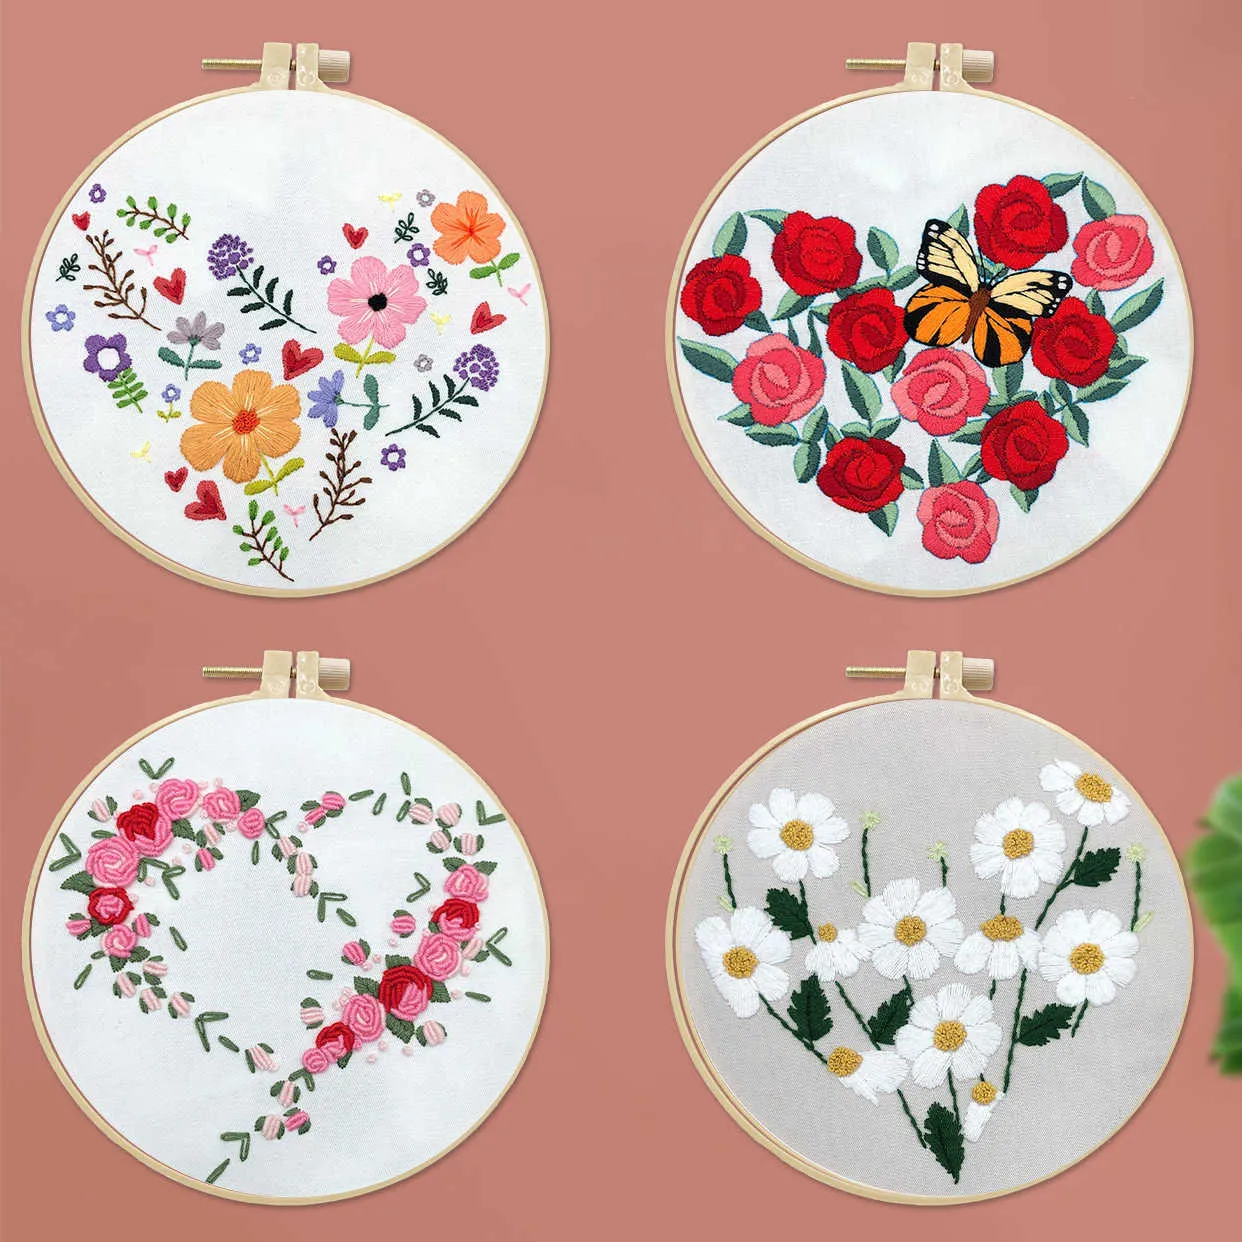 Produtos de estilo chinês em formato de coração bordado de flores faça você mesmo bordado padrão de planta de casa bordado para iniciantes ponto cruz artesanato (com